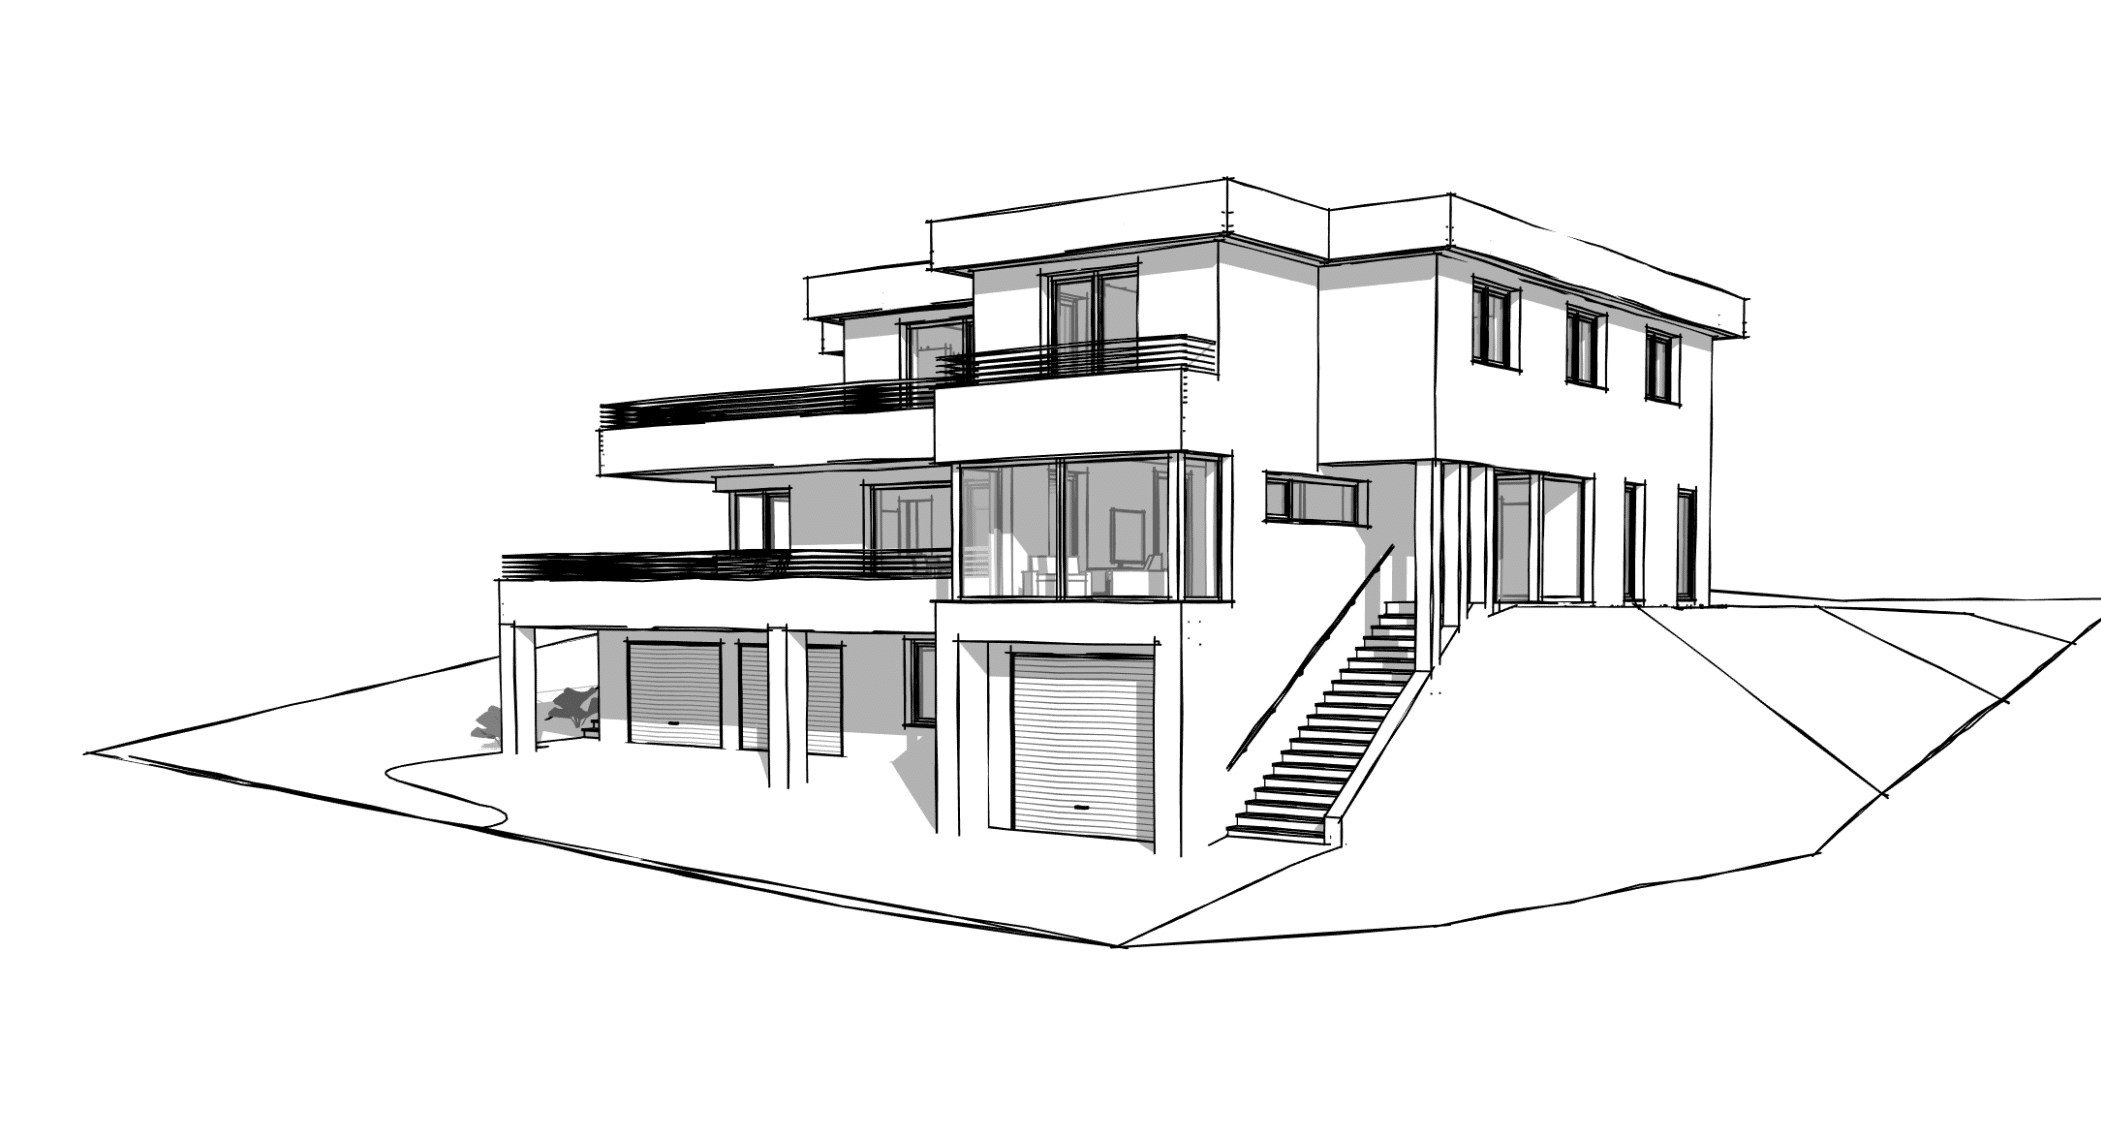 planco zeigt die Skizze eines Mehrfamilienhauses mit einer Garage und überdachtem Carport, verglastem Balkon und Zugang über Stiegen zu der Haustüre.